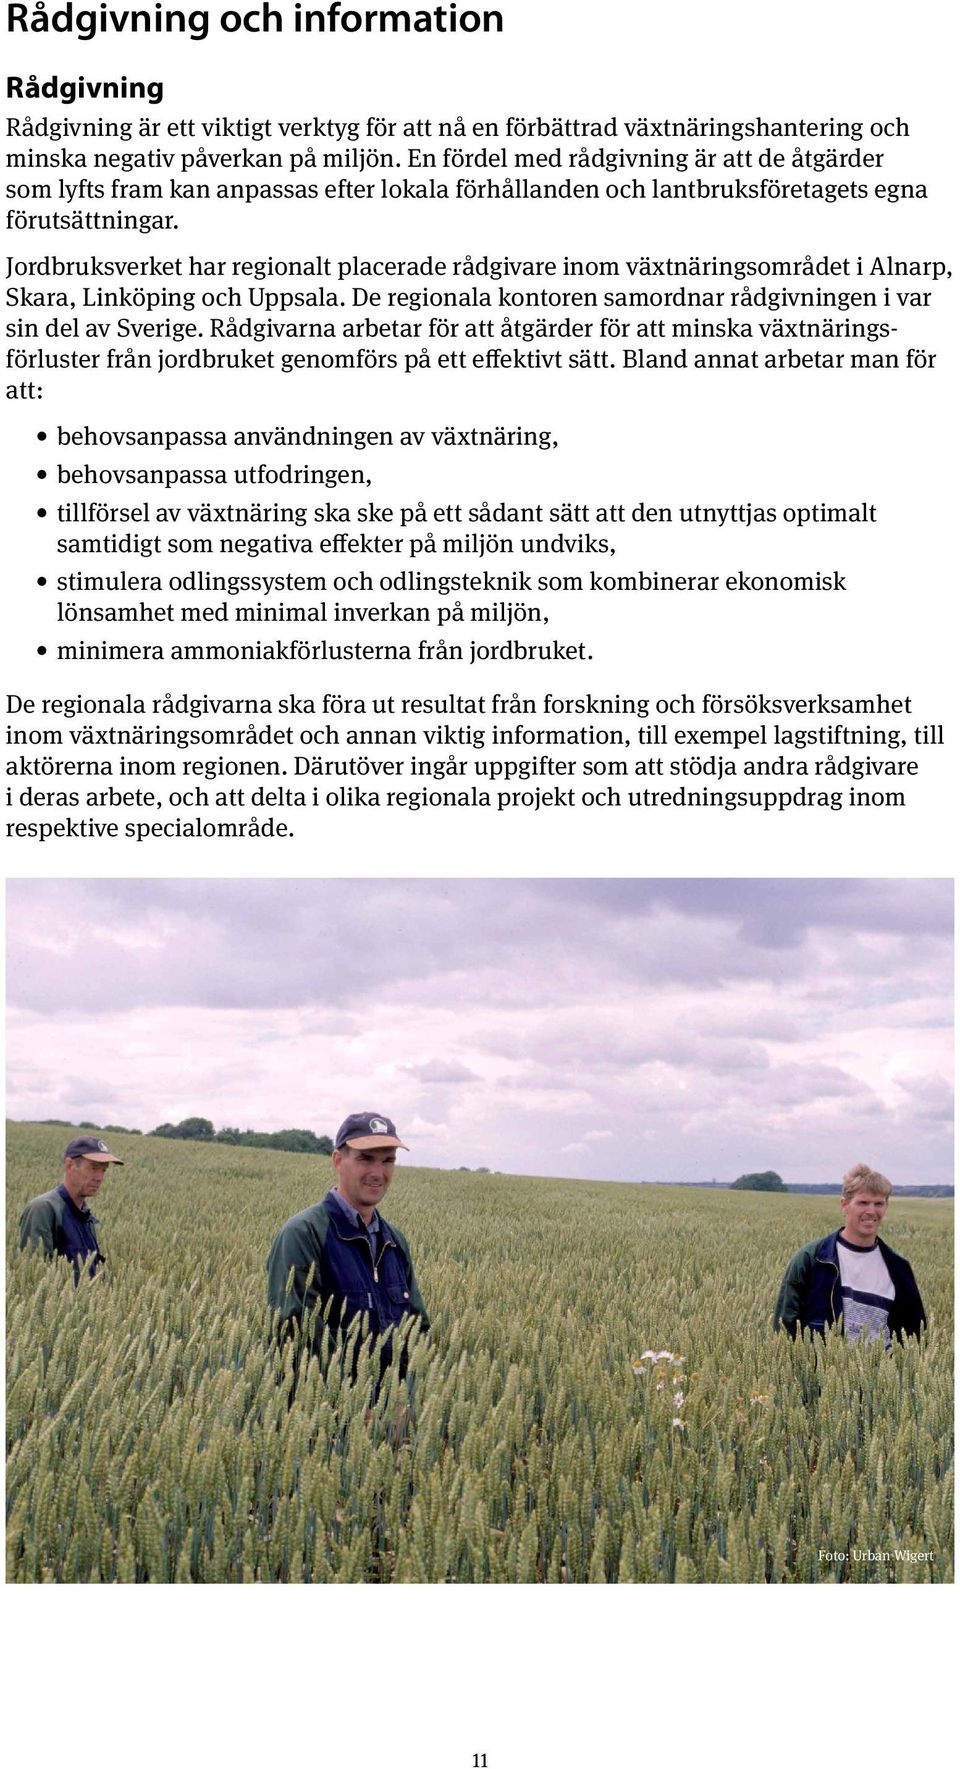 Jordbruksverket har regionalt placerade rådgivare inom växtnäringsområdet i Alnarp, Skara, Linköping och Uppsala. De regionala kontoren samordnar rådgivningen i var sin del av Sverige.